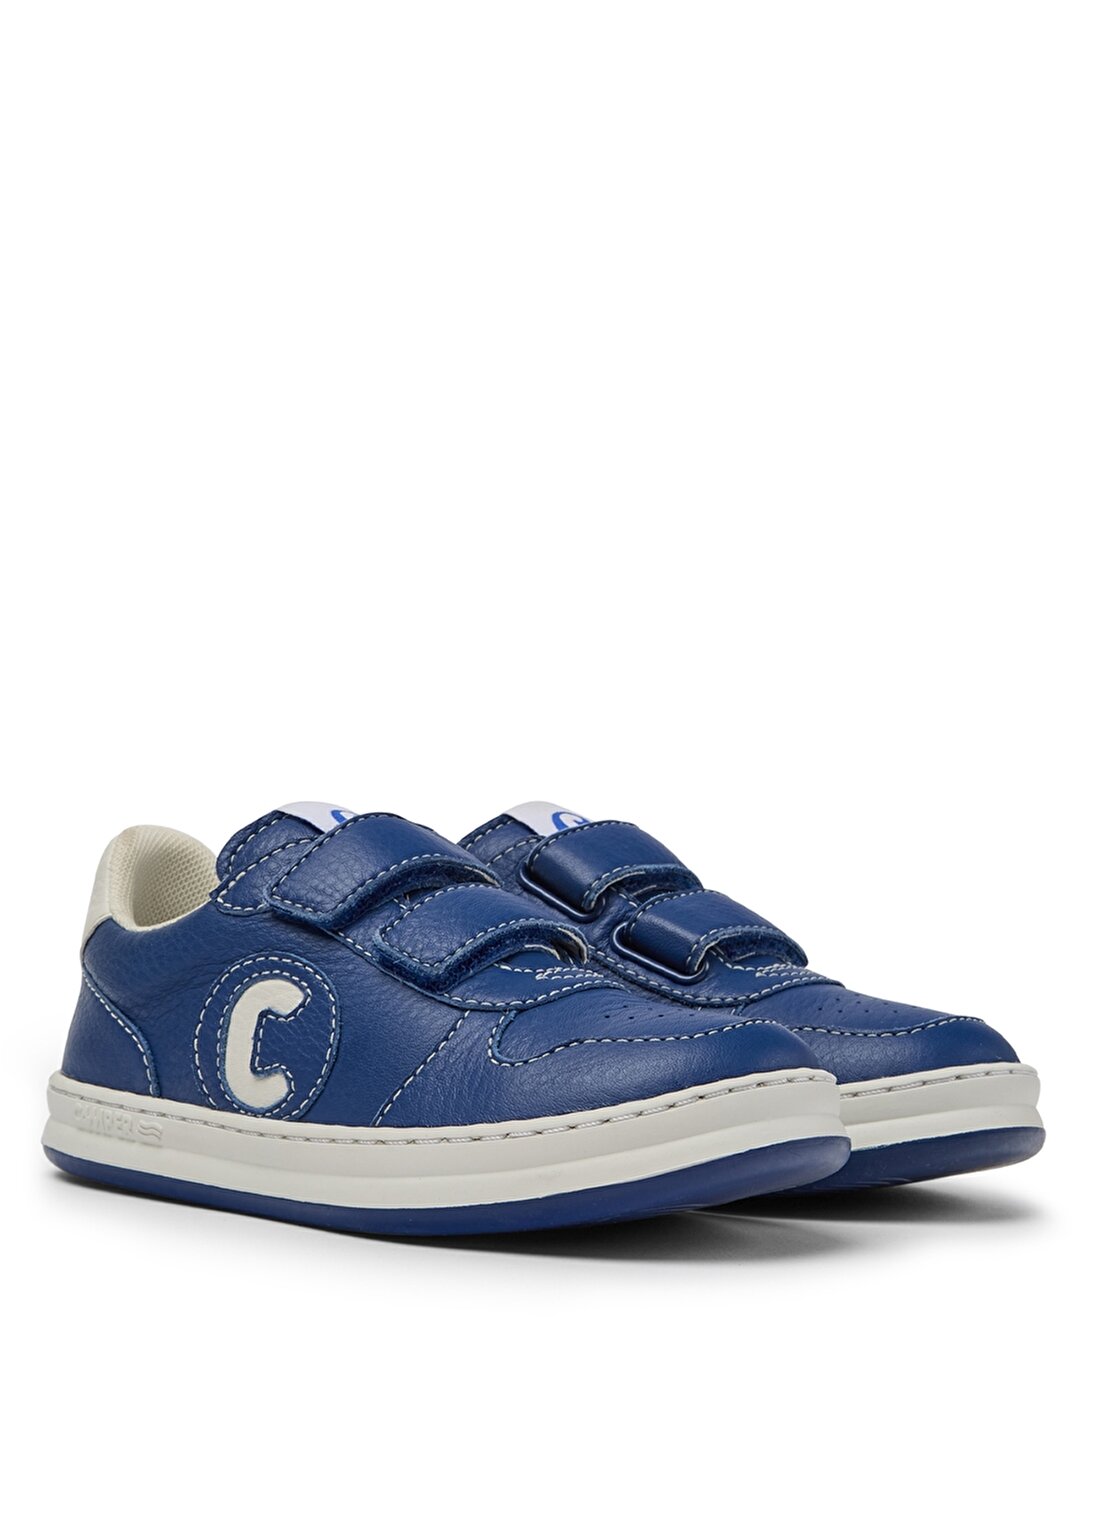 Camper K800436-013 Medium Blue Lacivert Erkek Çocuk Yürüyüş Ayakkabısı